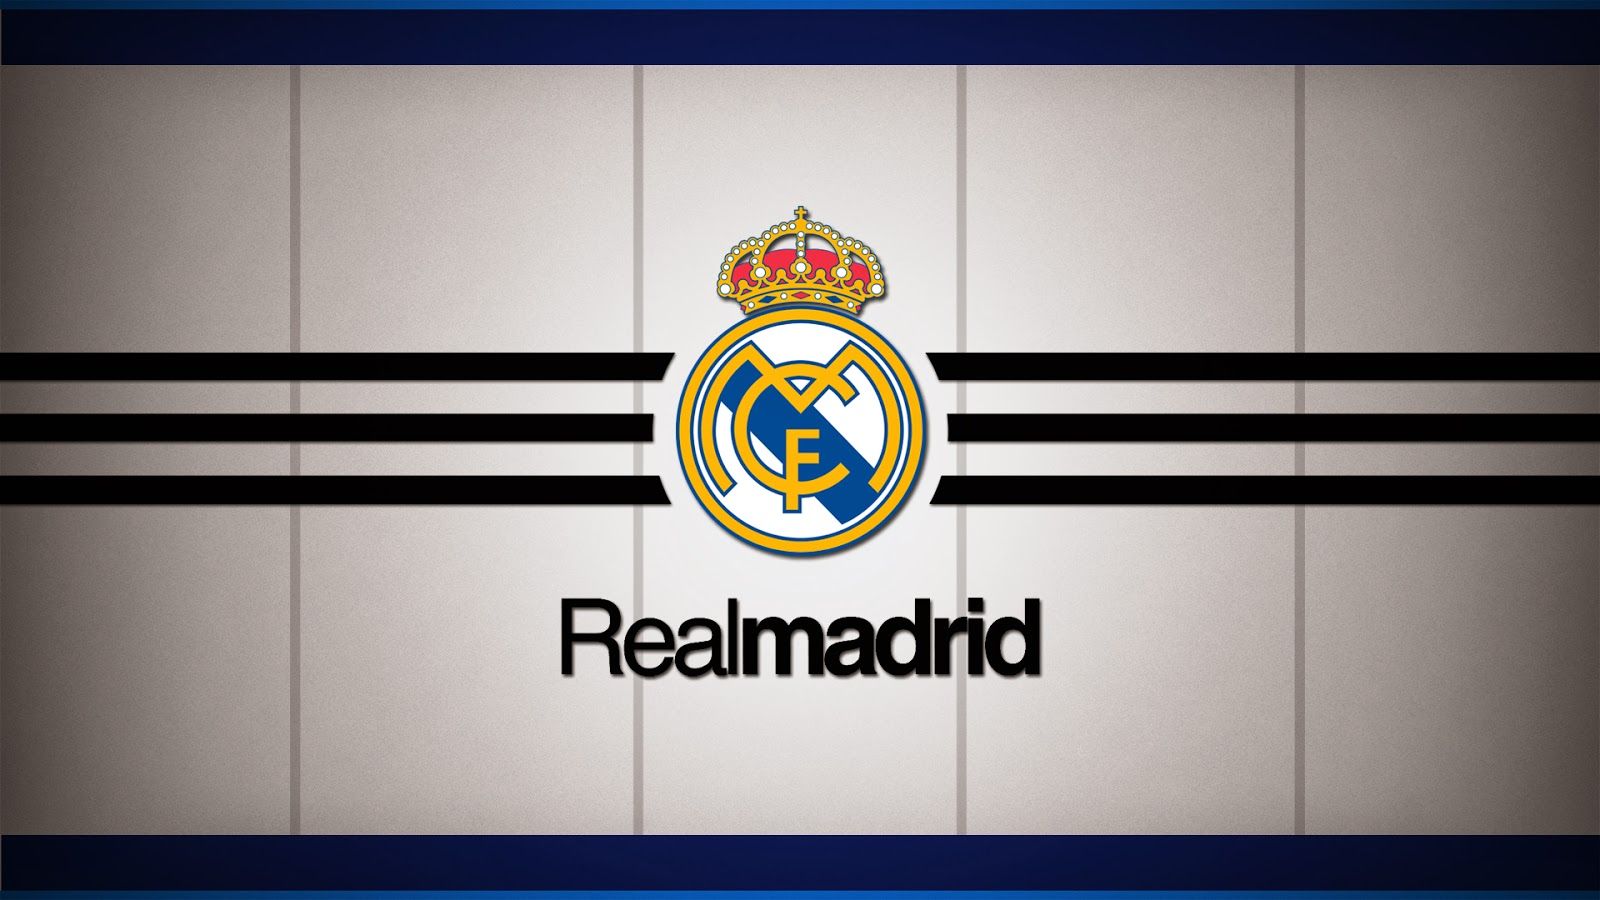 HD Football Wallpaper: Real madrid Logo Wallpaper I